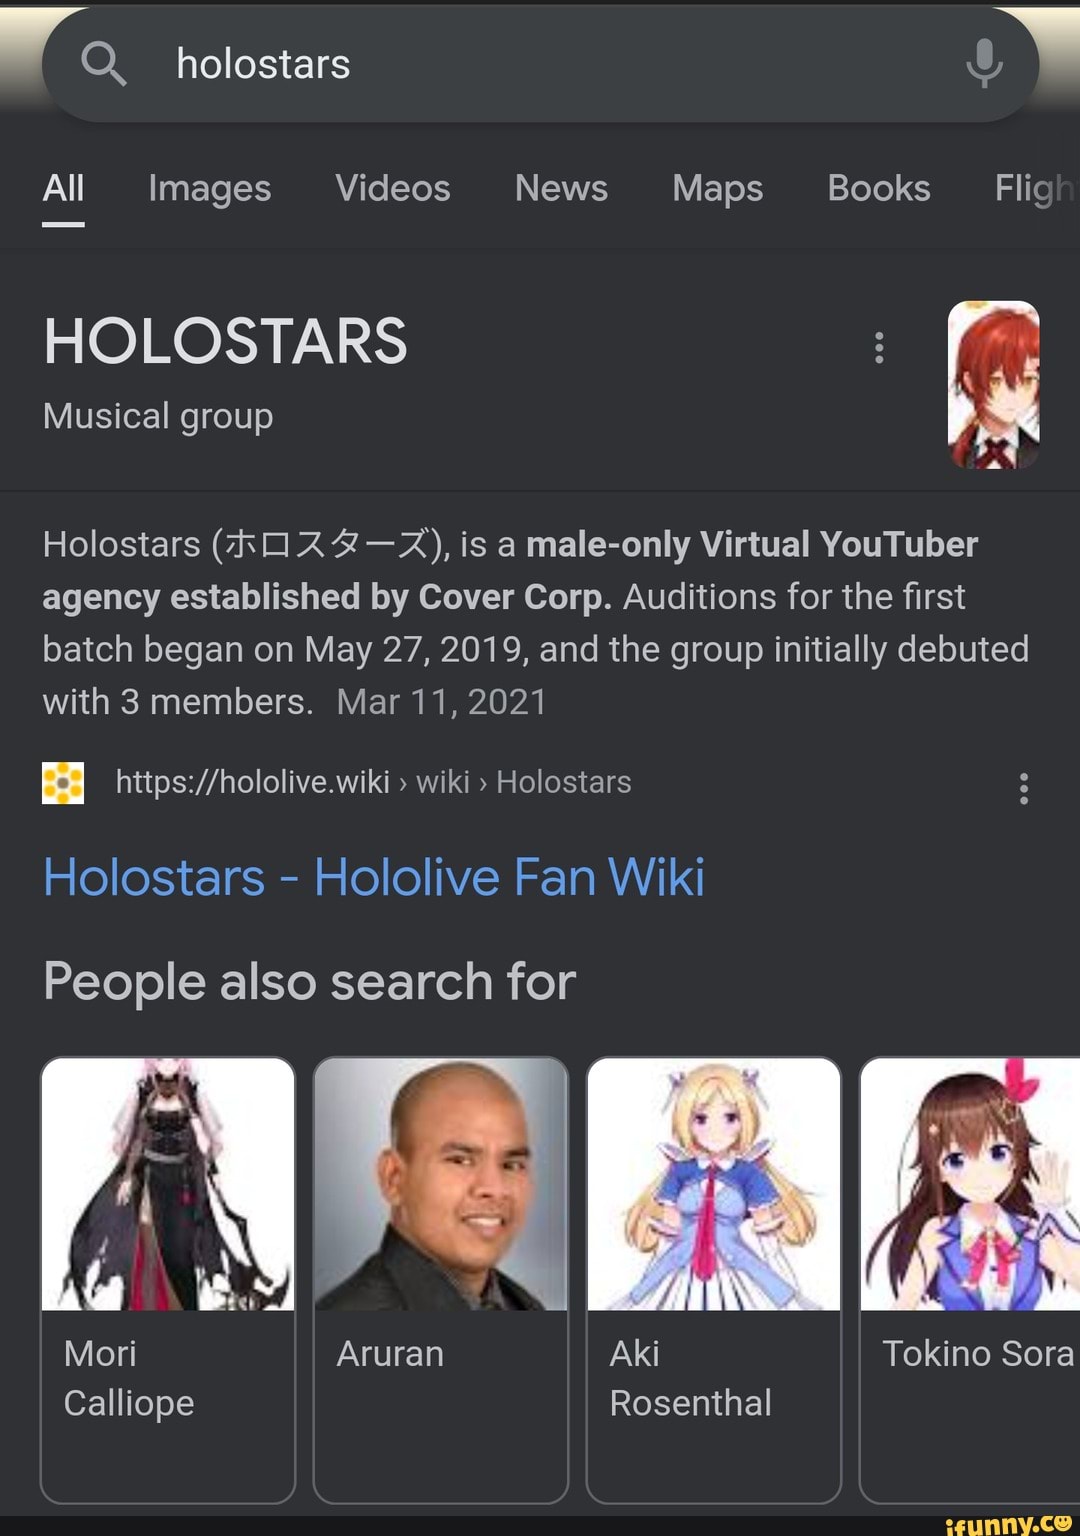 Mori Calliope - Hololive Fan Wiki